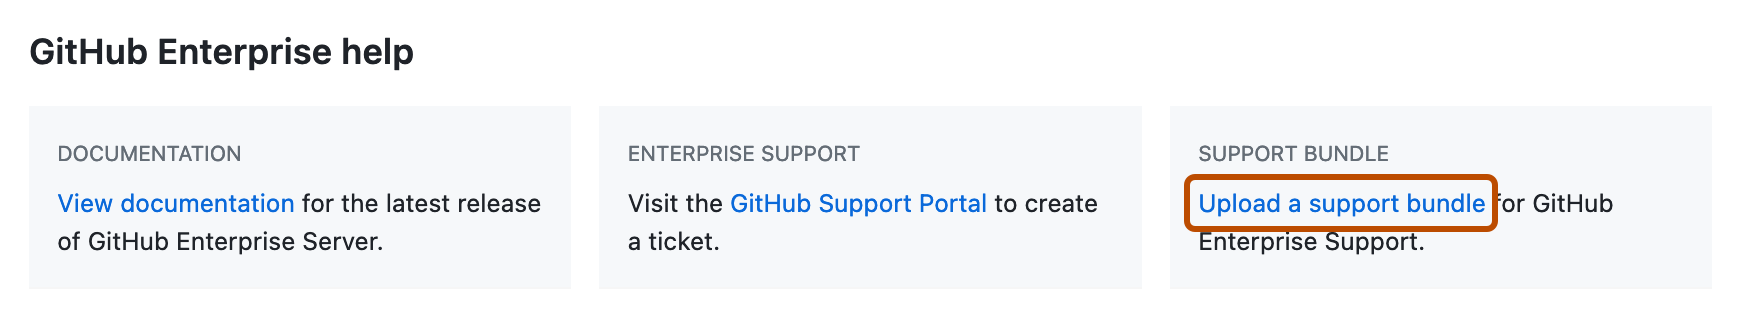 企业设置页的“GitHub Enterprise 帮助”部分的屏幕截图。 “上传支持包链接”以深橙色矩形突出显示。